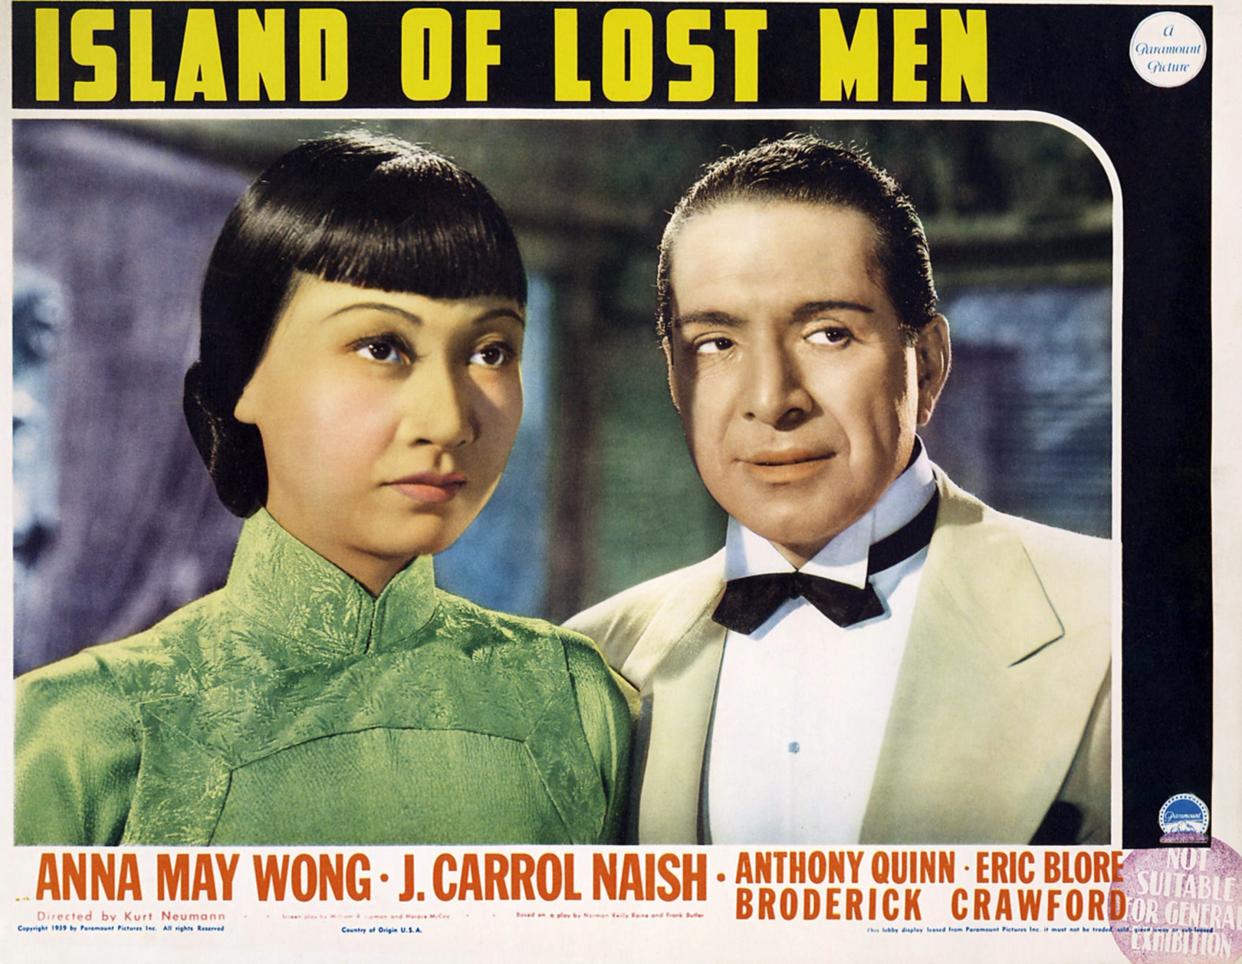 Anna May Wong and J. Carrol Naish 